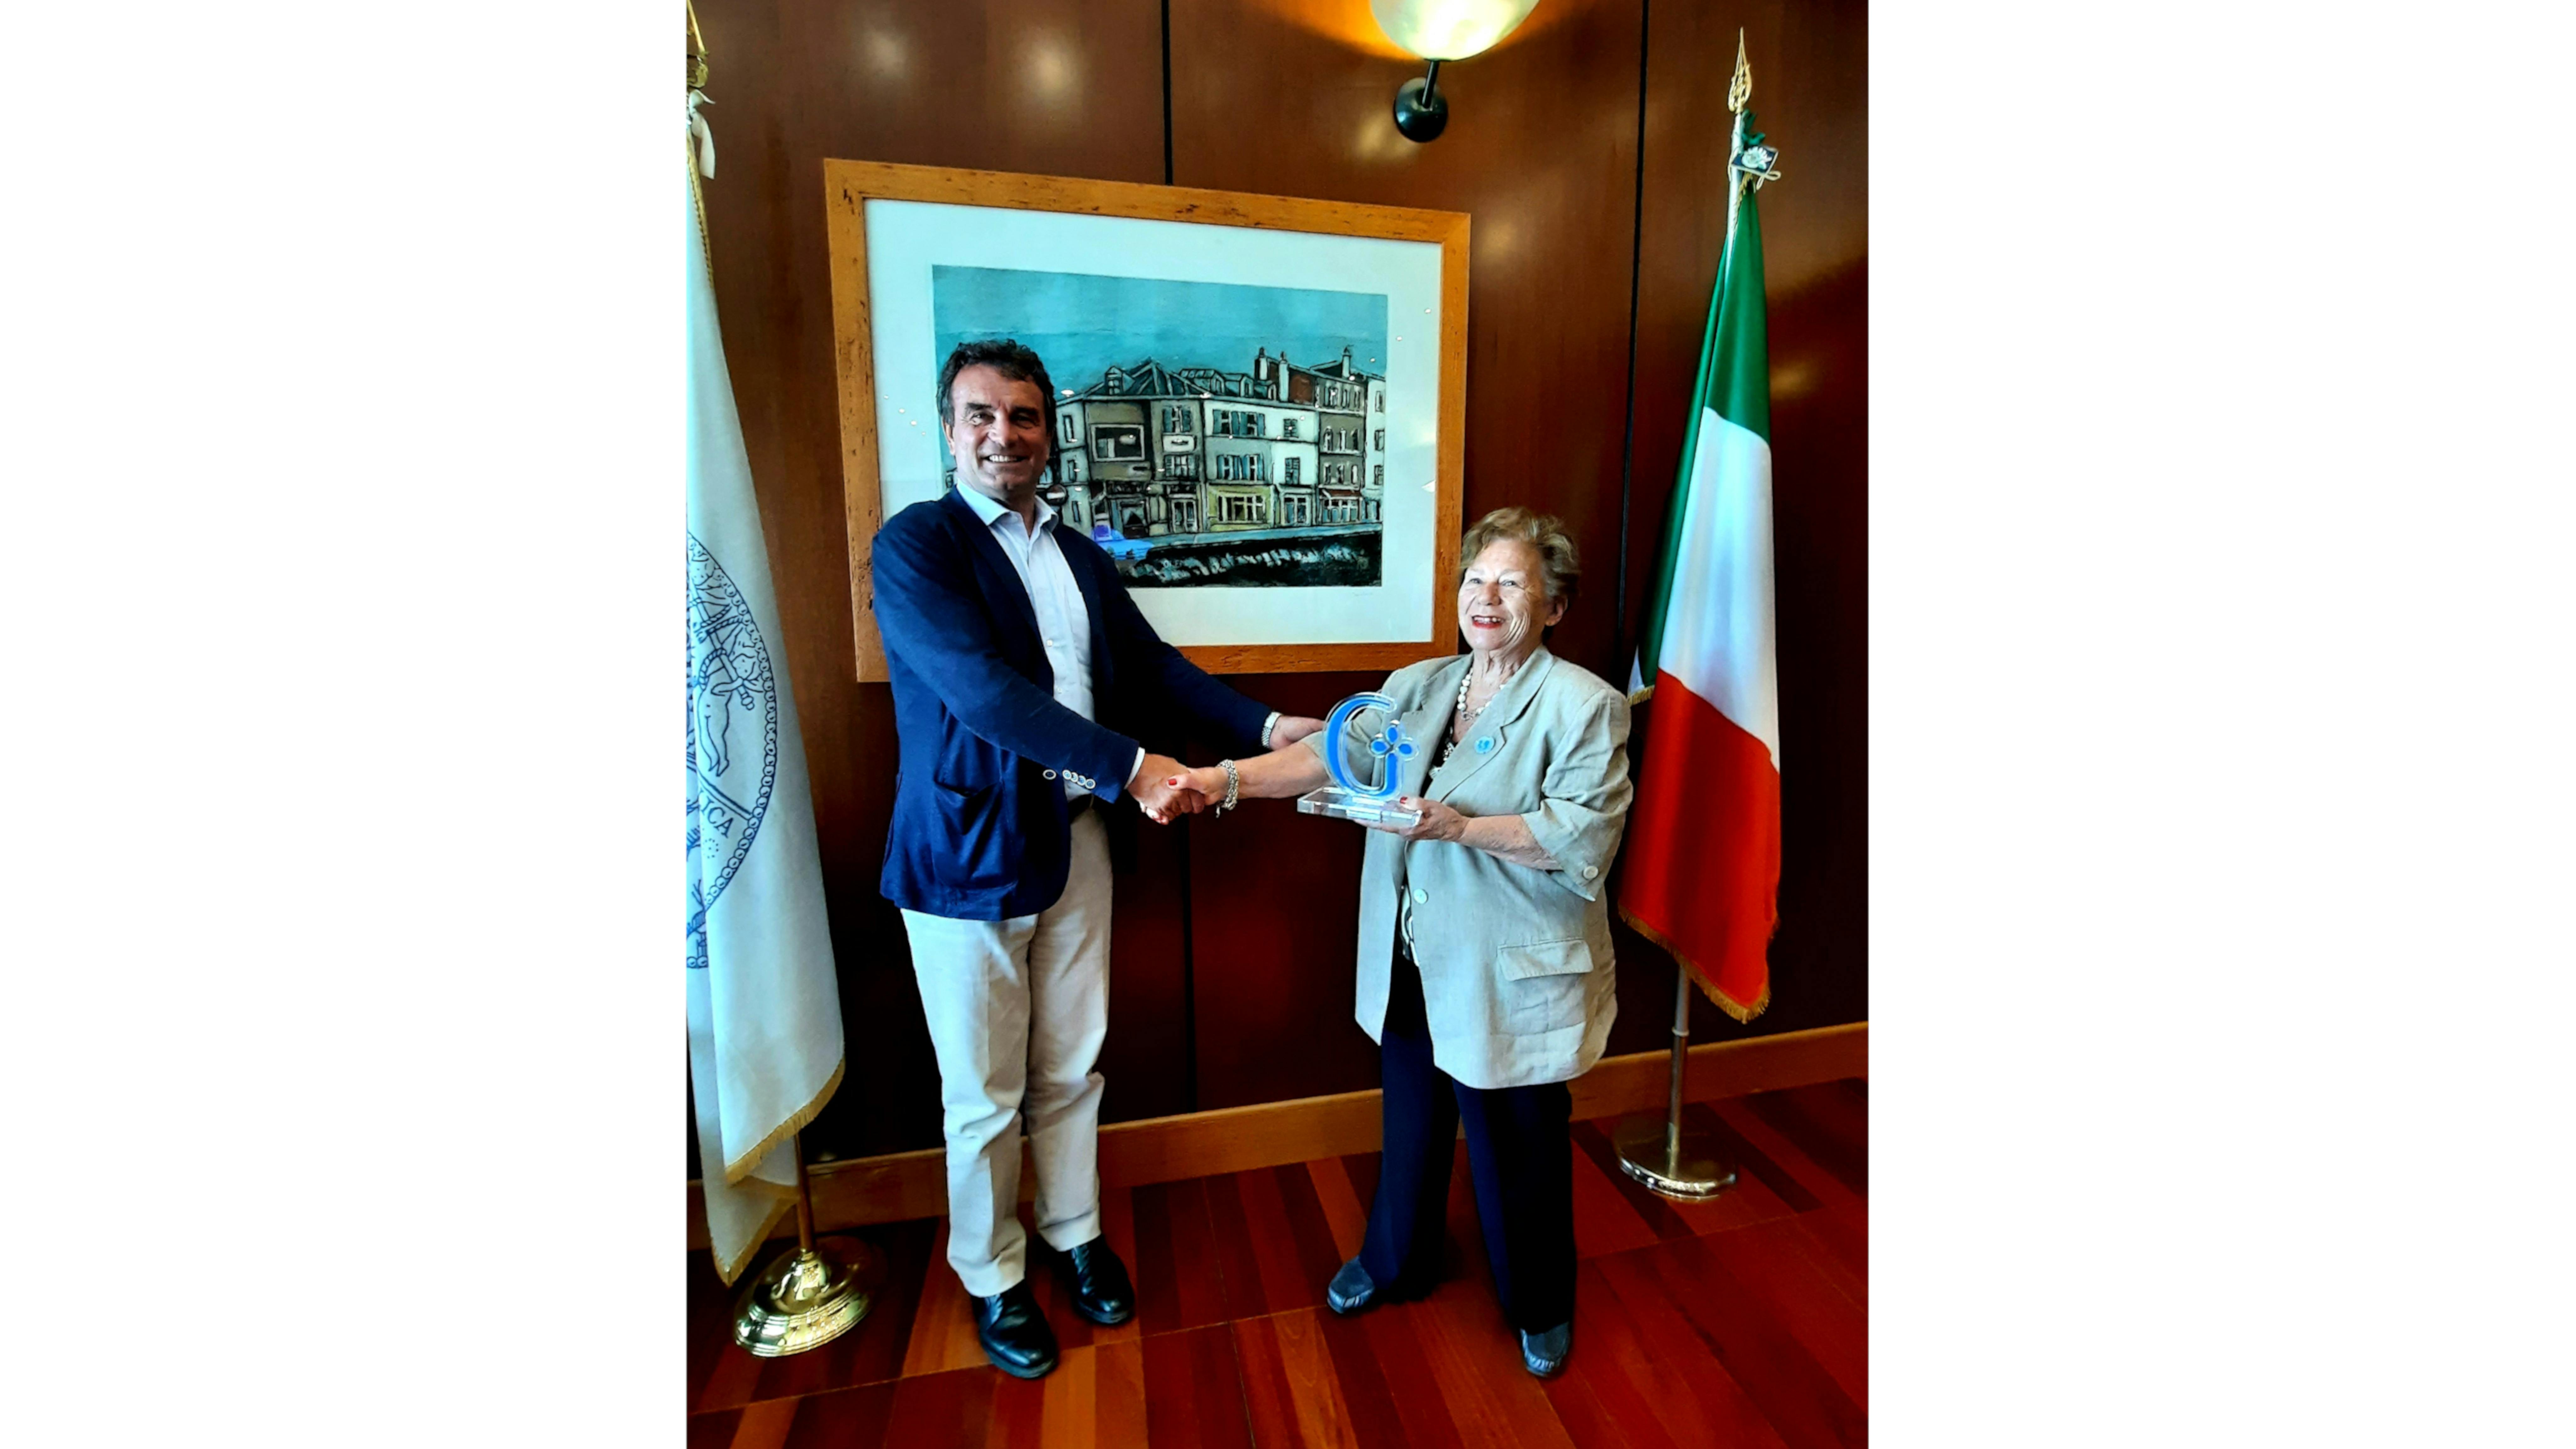 II Direttore Generale della Fondazione Policlinico Universitario Agostino Gemelli IRCCS, Marco Elefanti e la Presidente dell'UNICEF Italia, Carmela Pace.